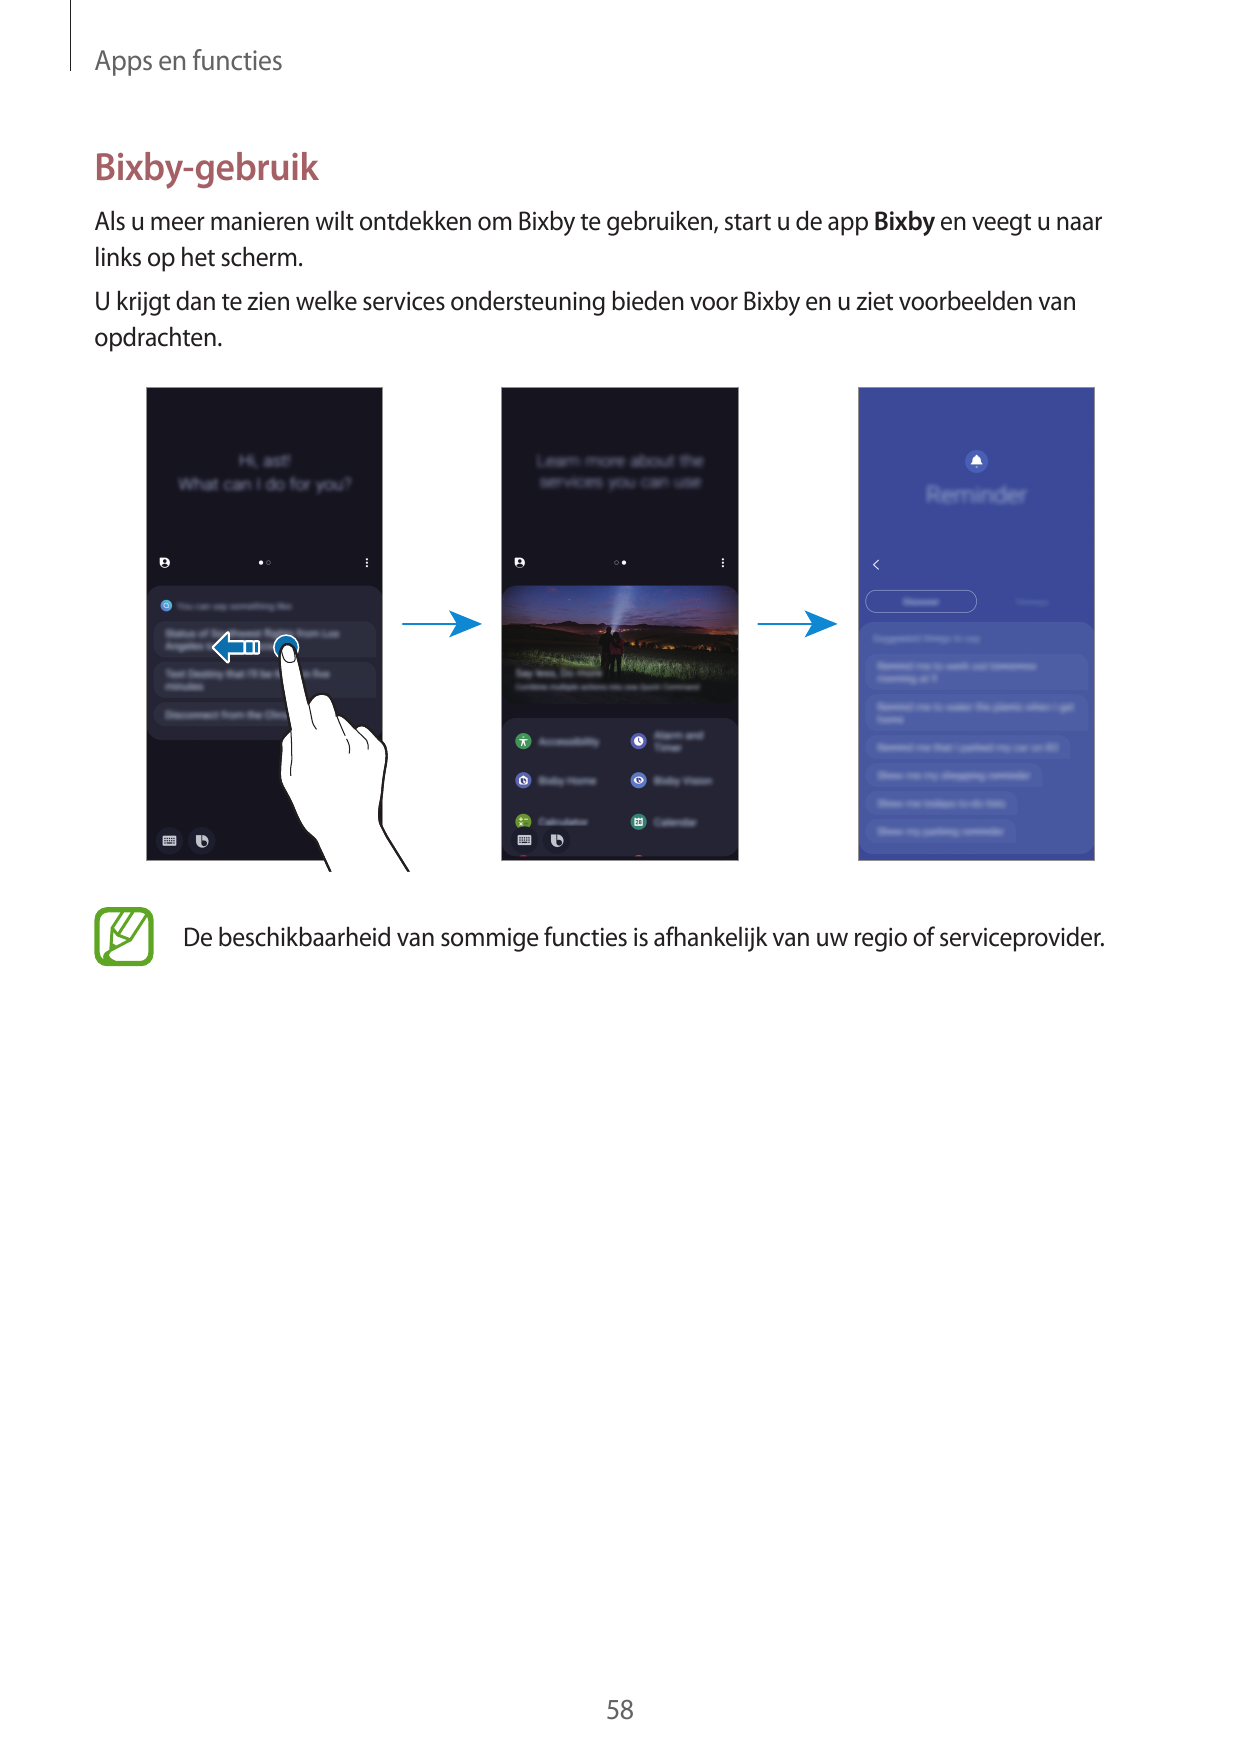 Apps en functiesBixby-gebruikAls u meer manieren wilt ontdekken om Bixby te gebruiken, start u de app Bixby en veegt u naarlinks